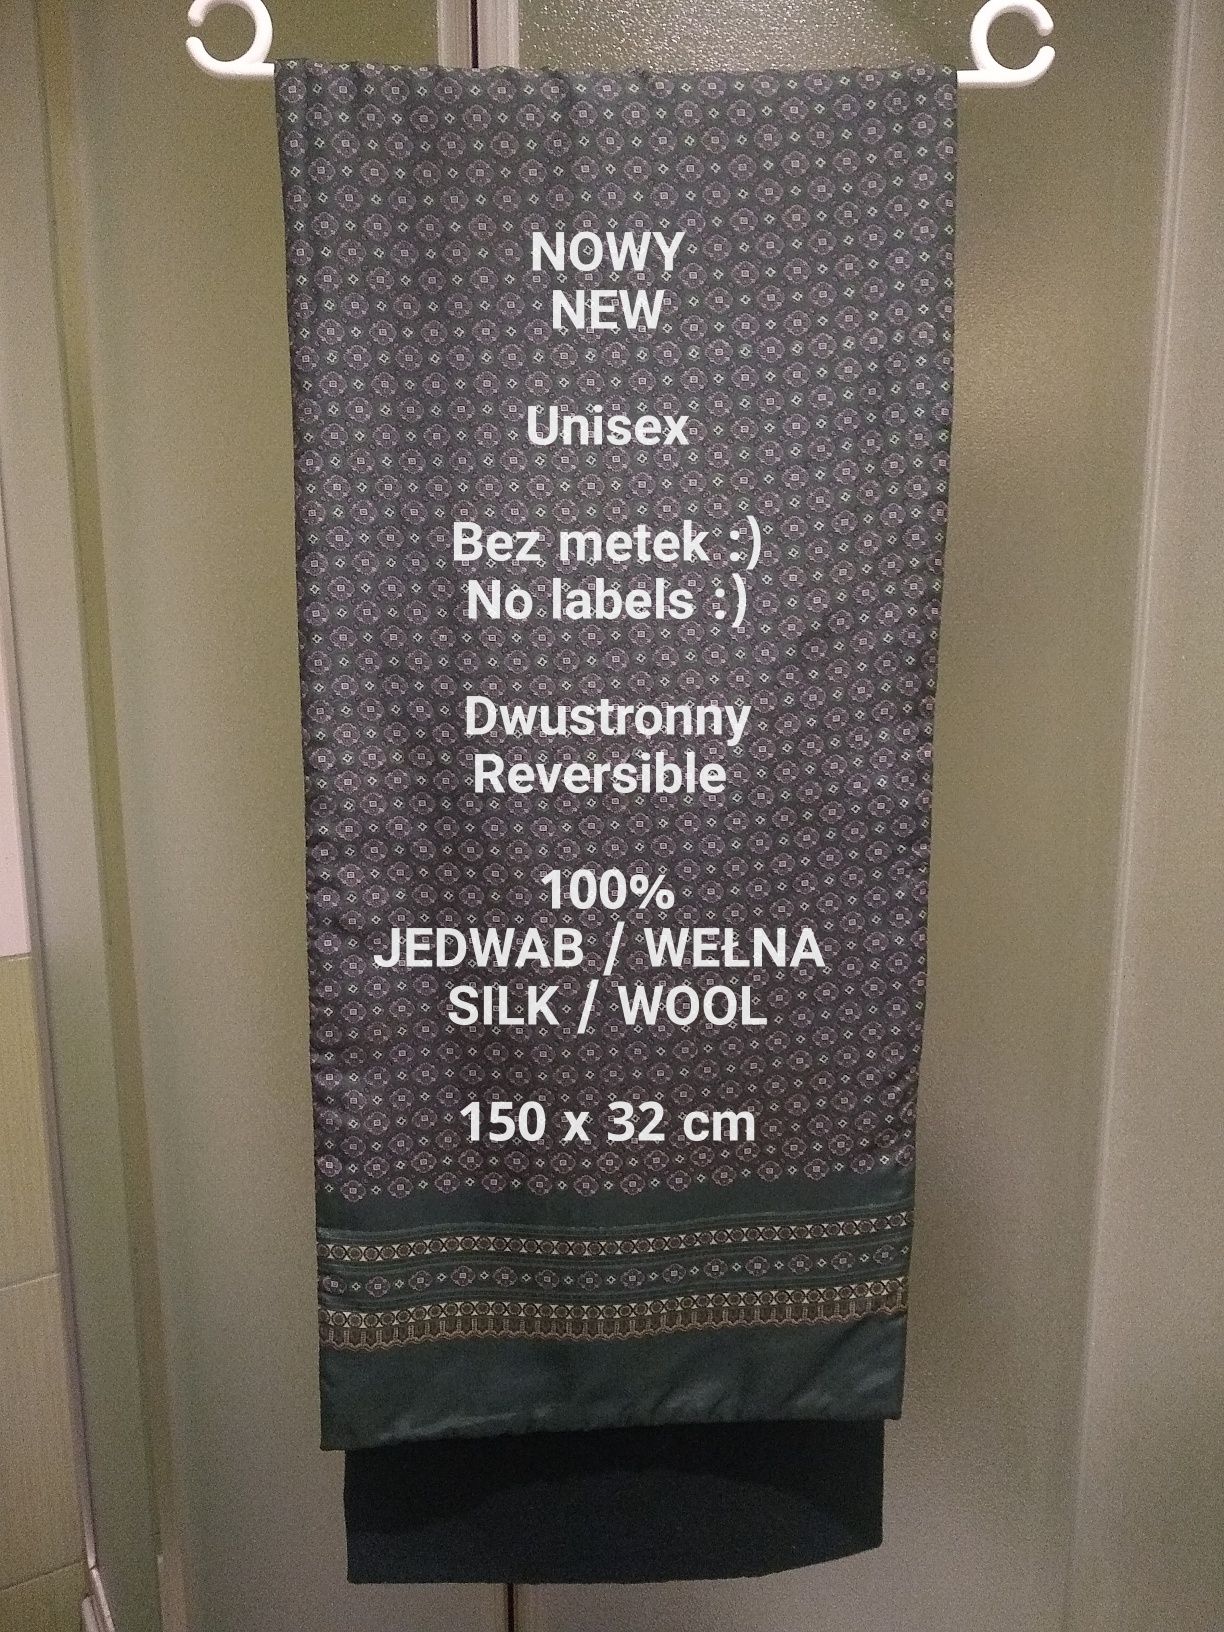 Elegancki dwustronny szal, 100% Jedwab + Wełna, 150 x 32 cm